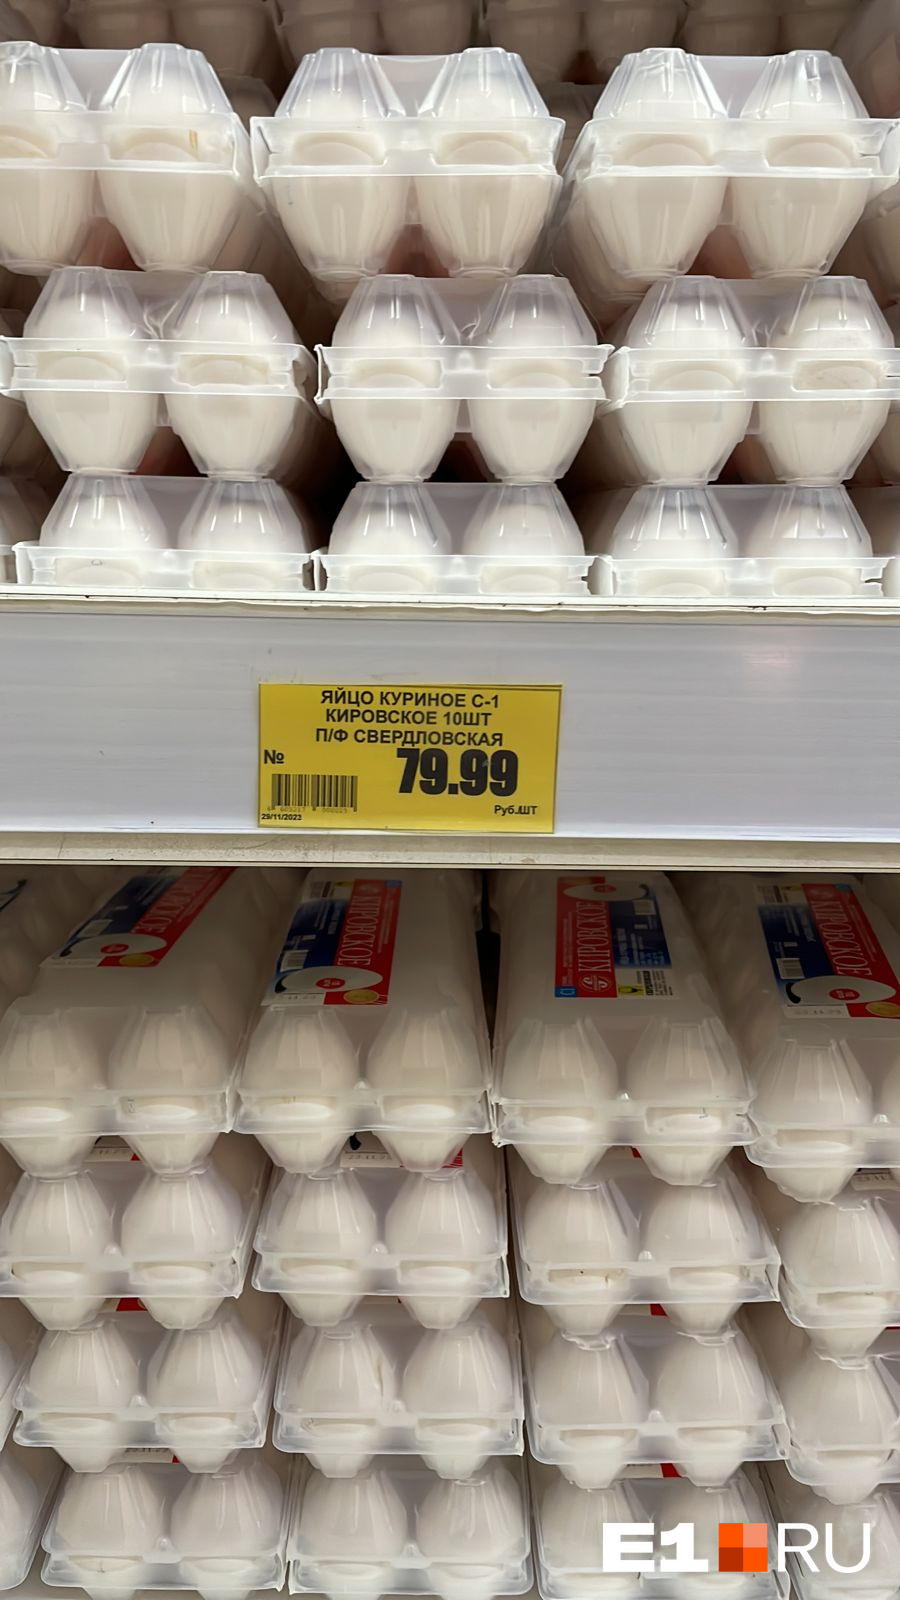 Самые дешевые яйца — в «Кировском»